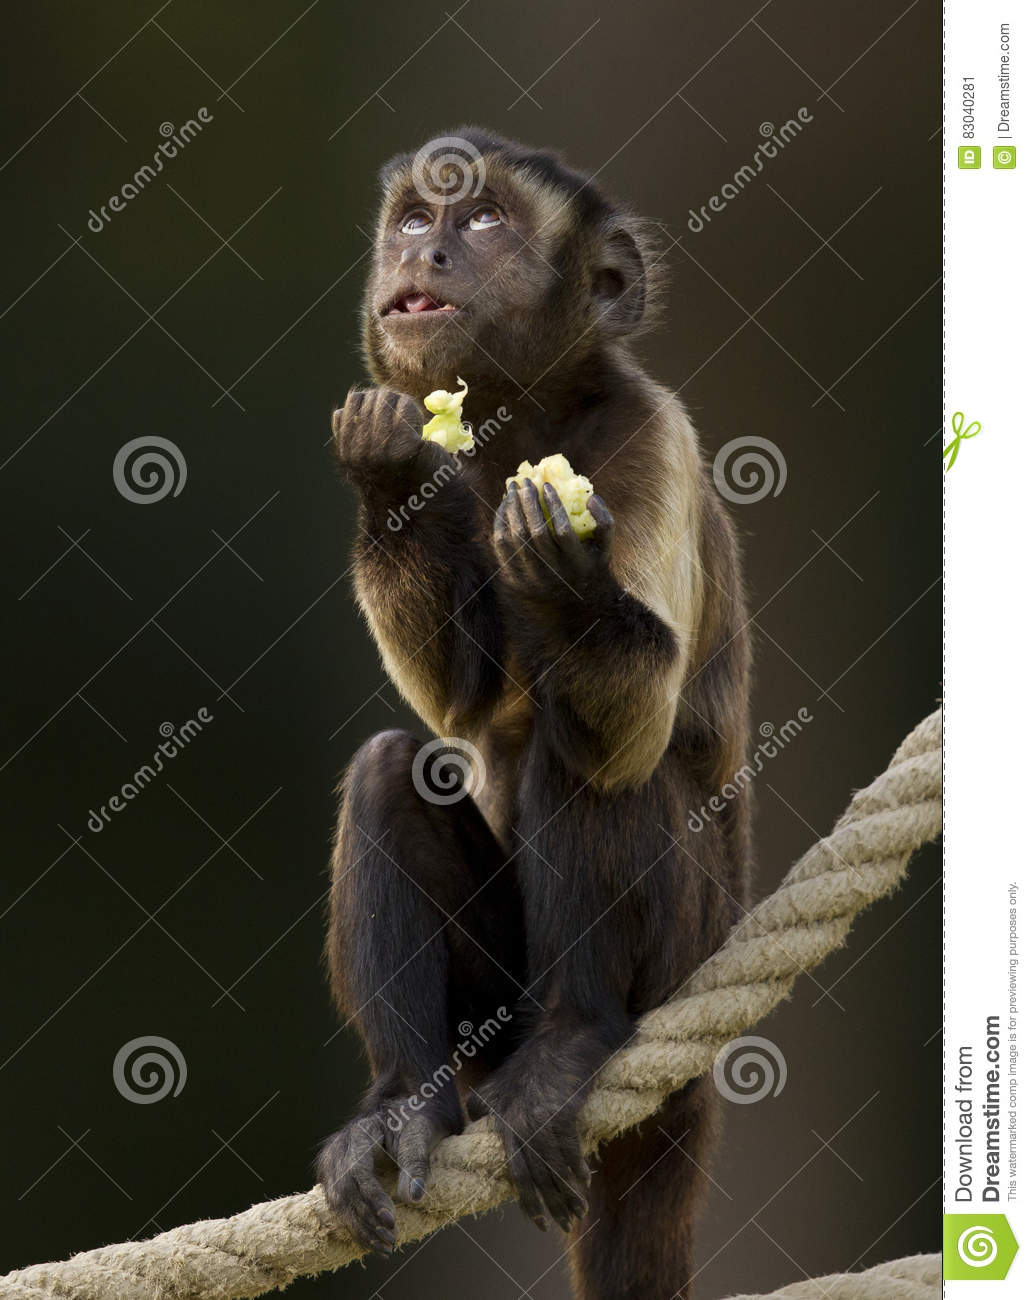 pregare-divertente-della-scimmia-83040281.jpg